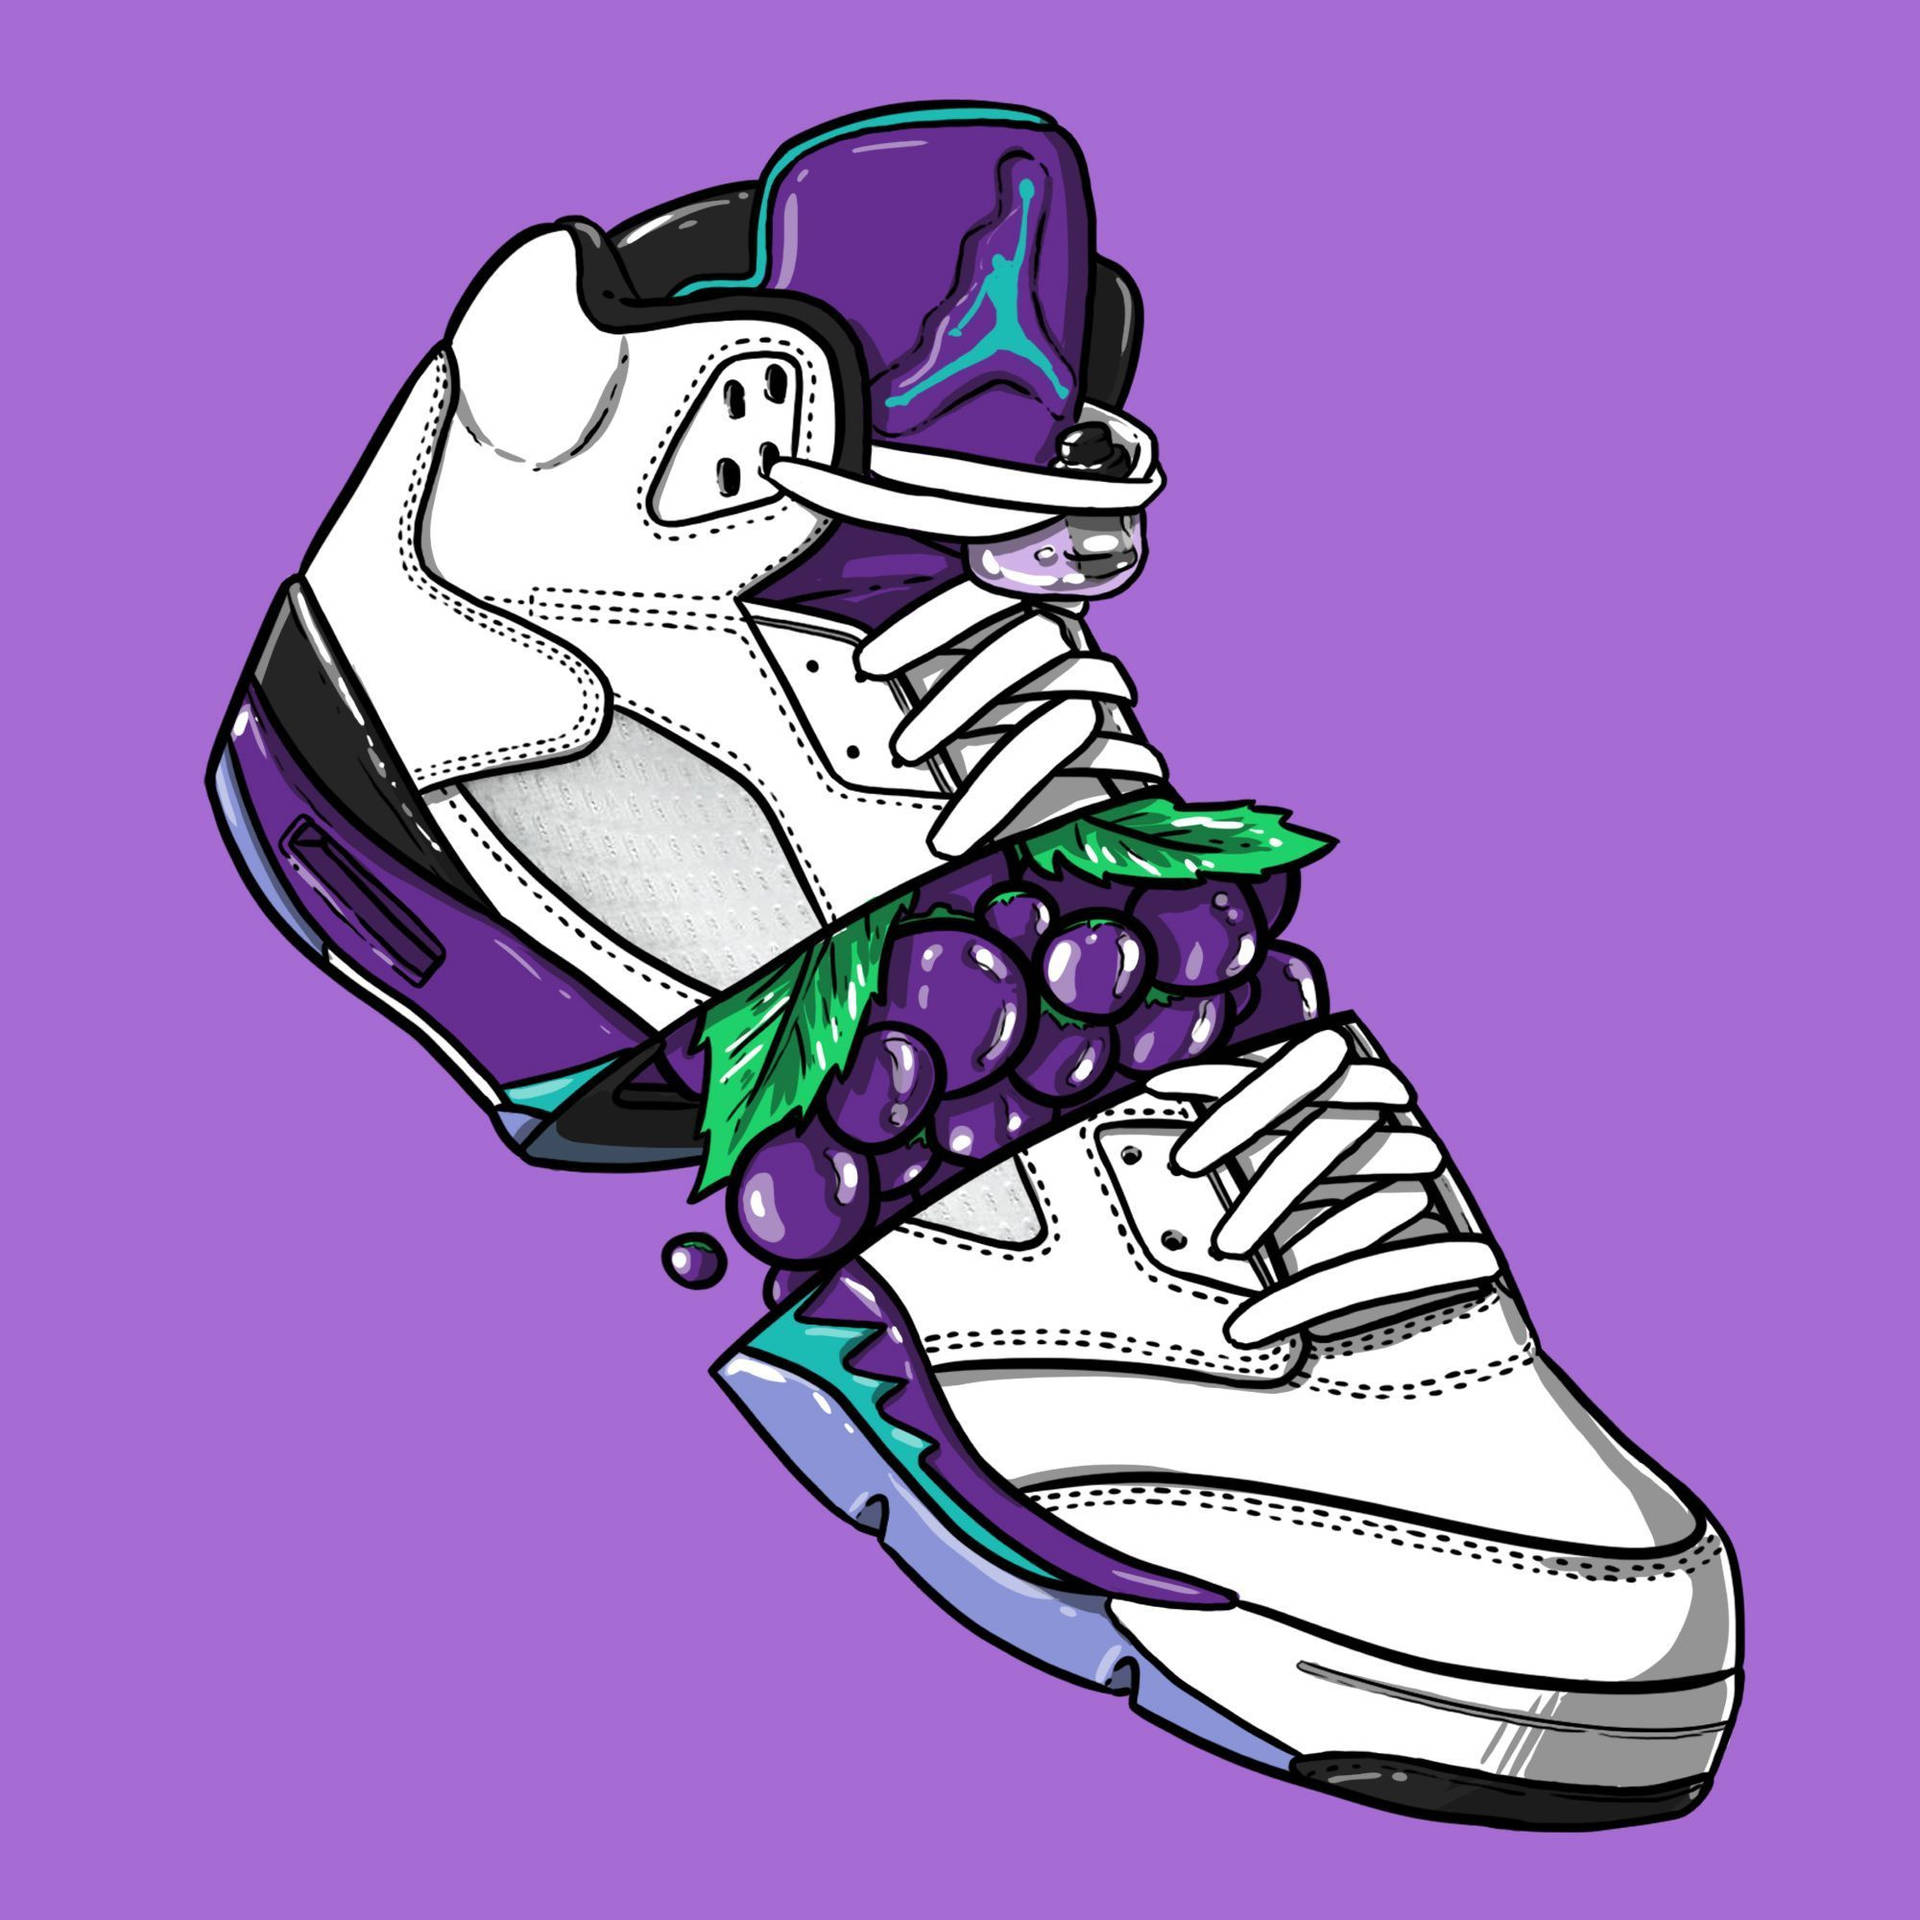 De ikoniske Air Jordan-sko. Wallpaper